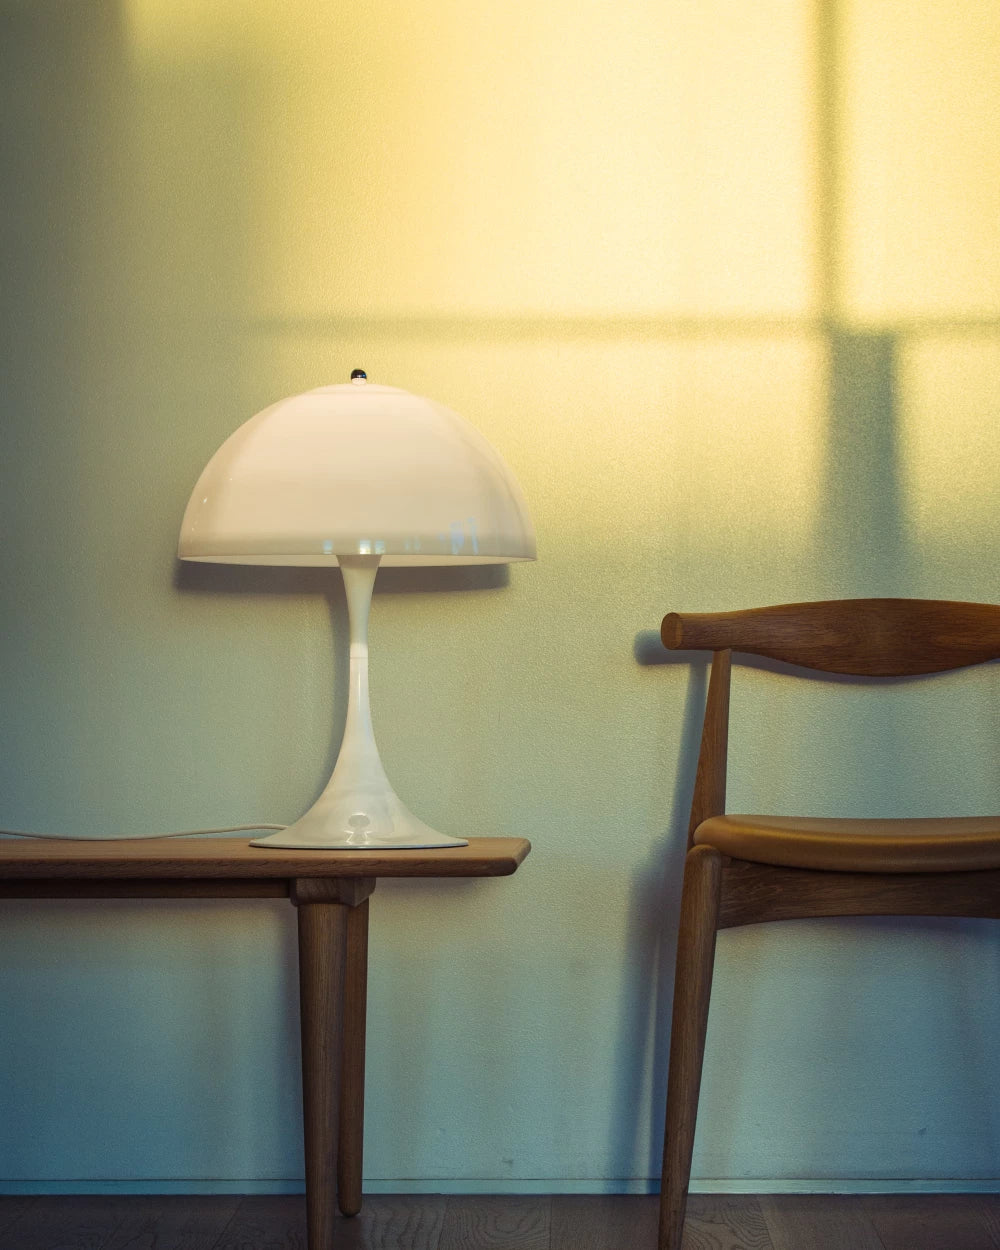 Panthella 400 Table Lamp by Louis Poulsen